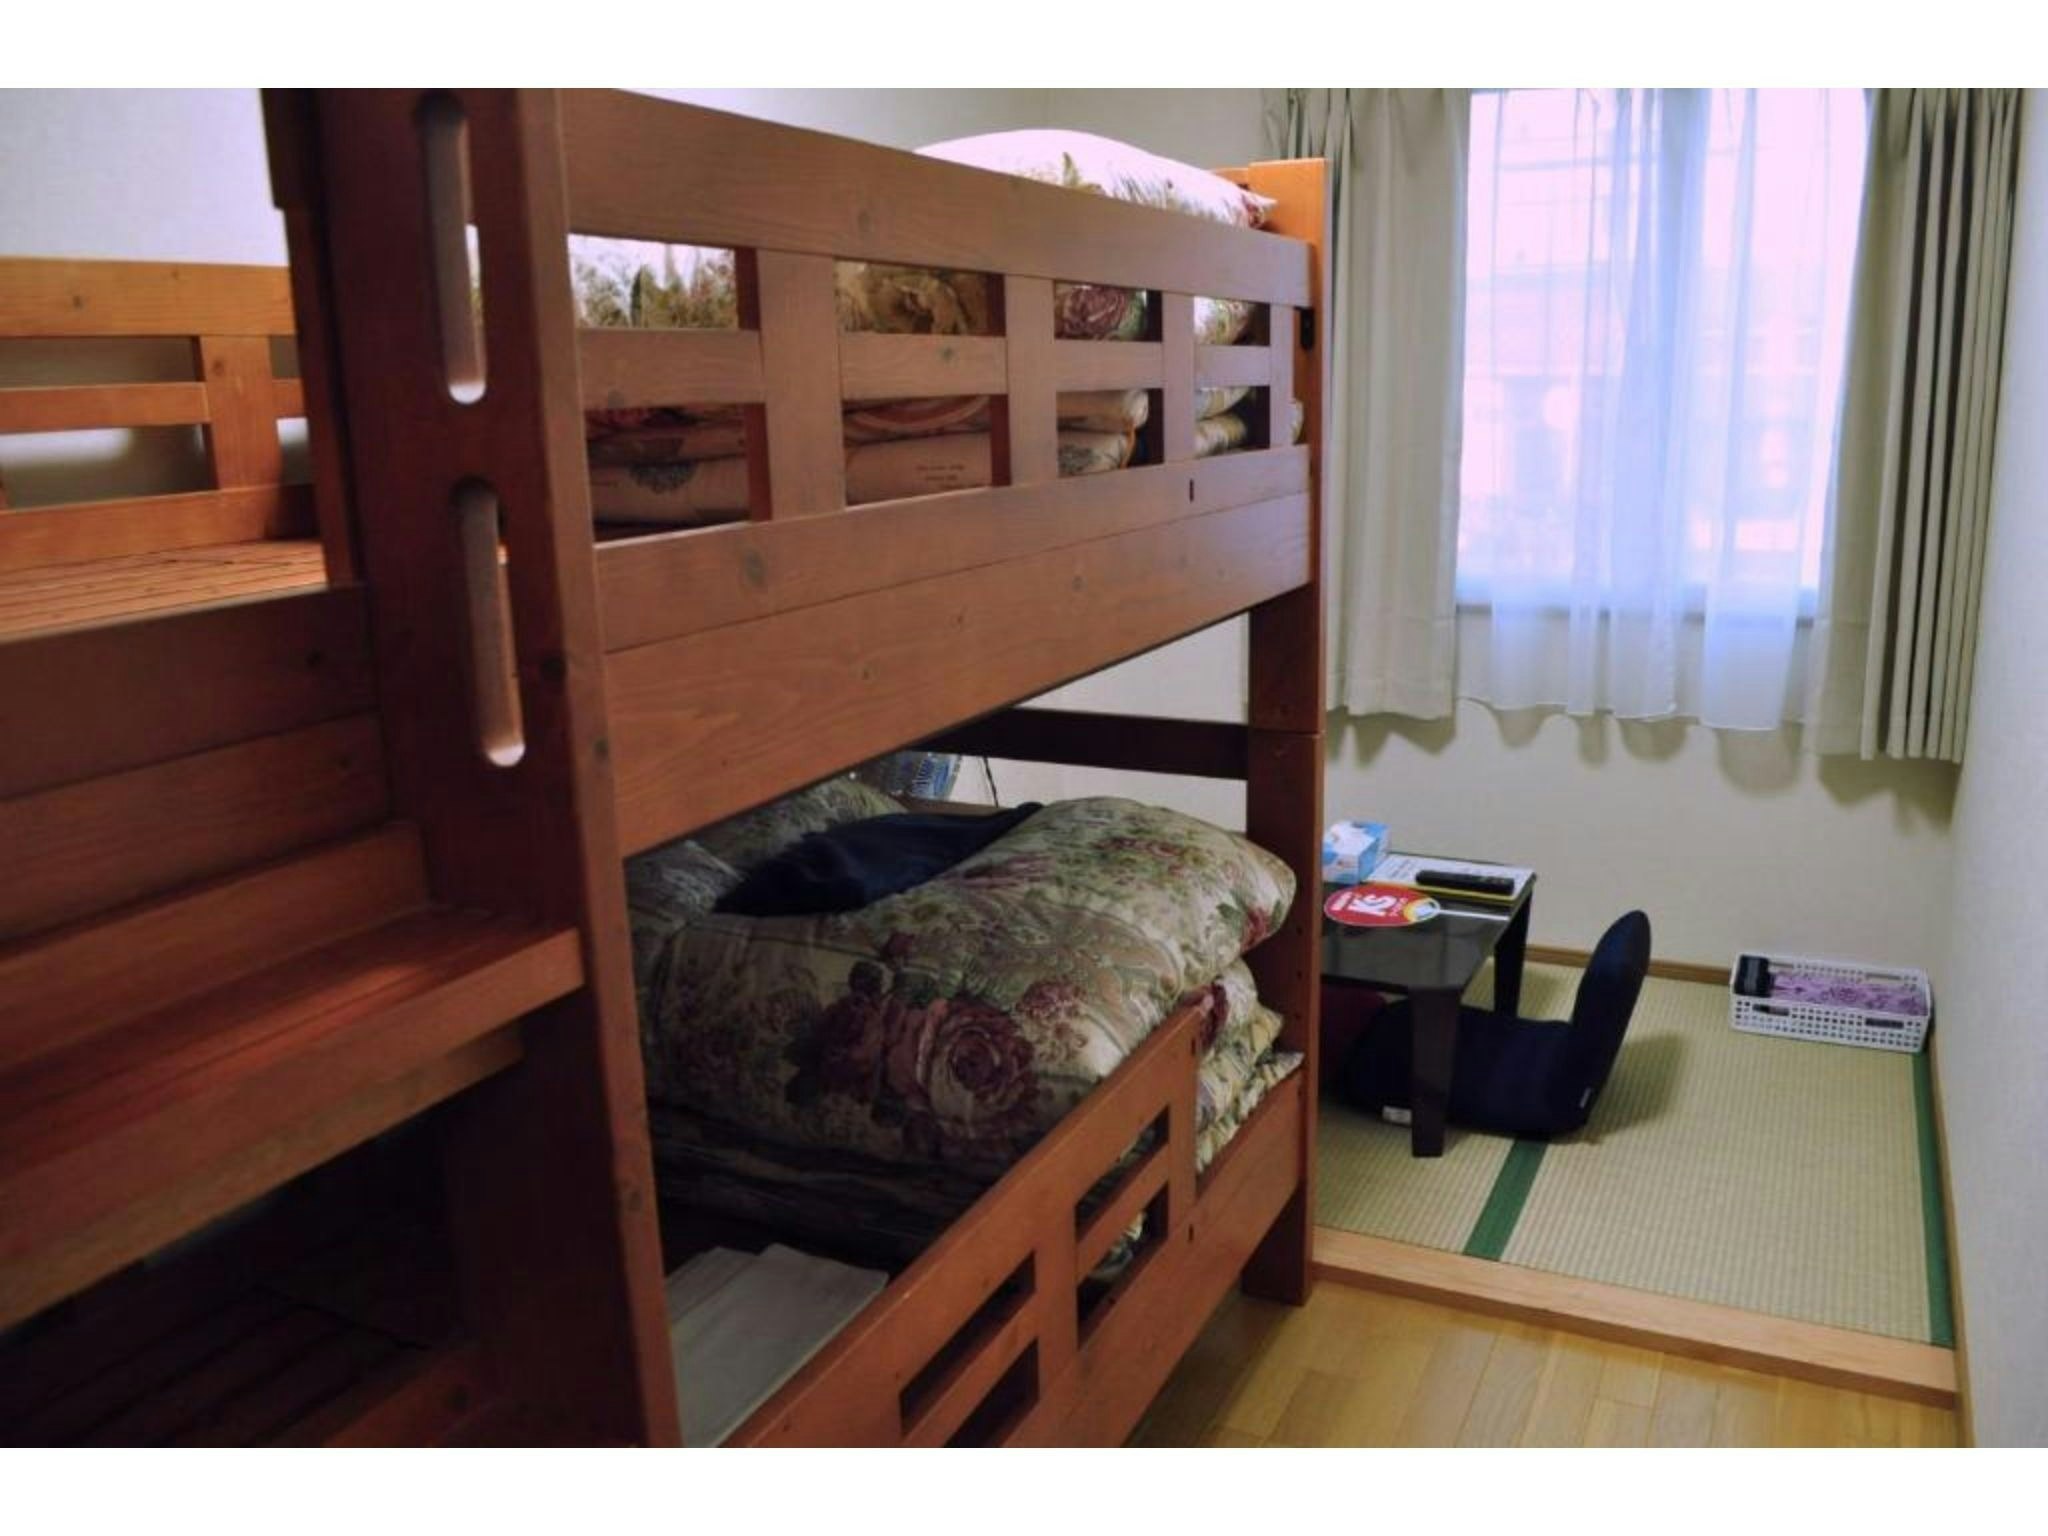 【全室禁煙】和室 二段ベッド付 共用バスルーム ルームA/B